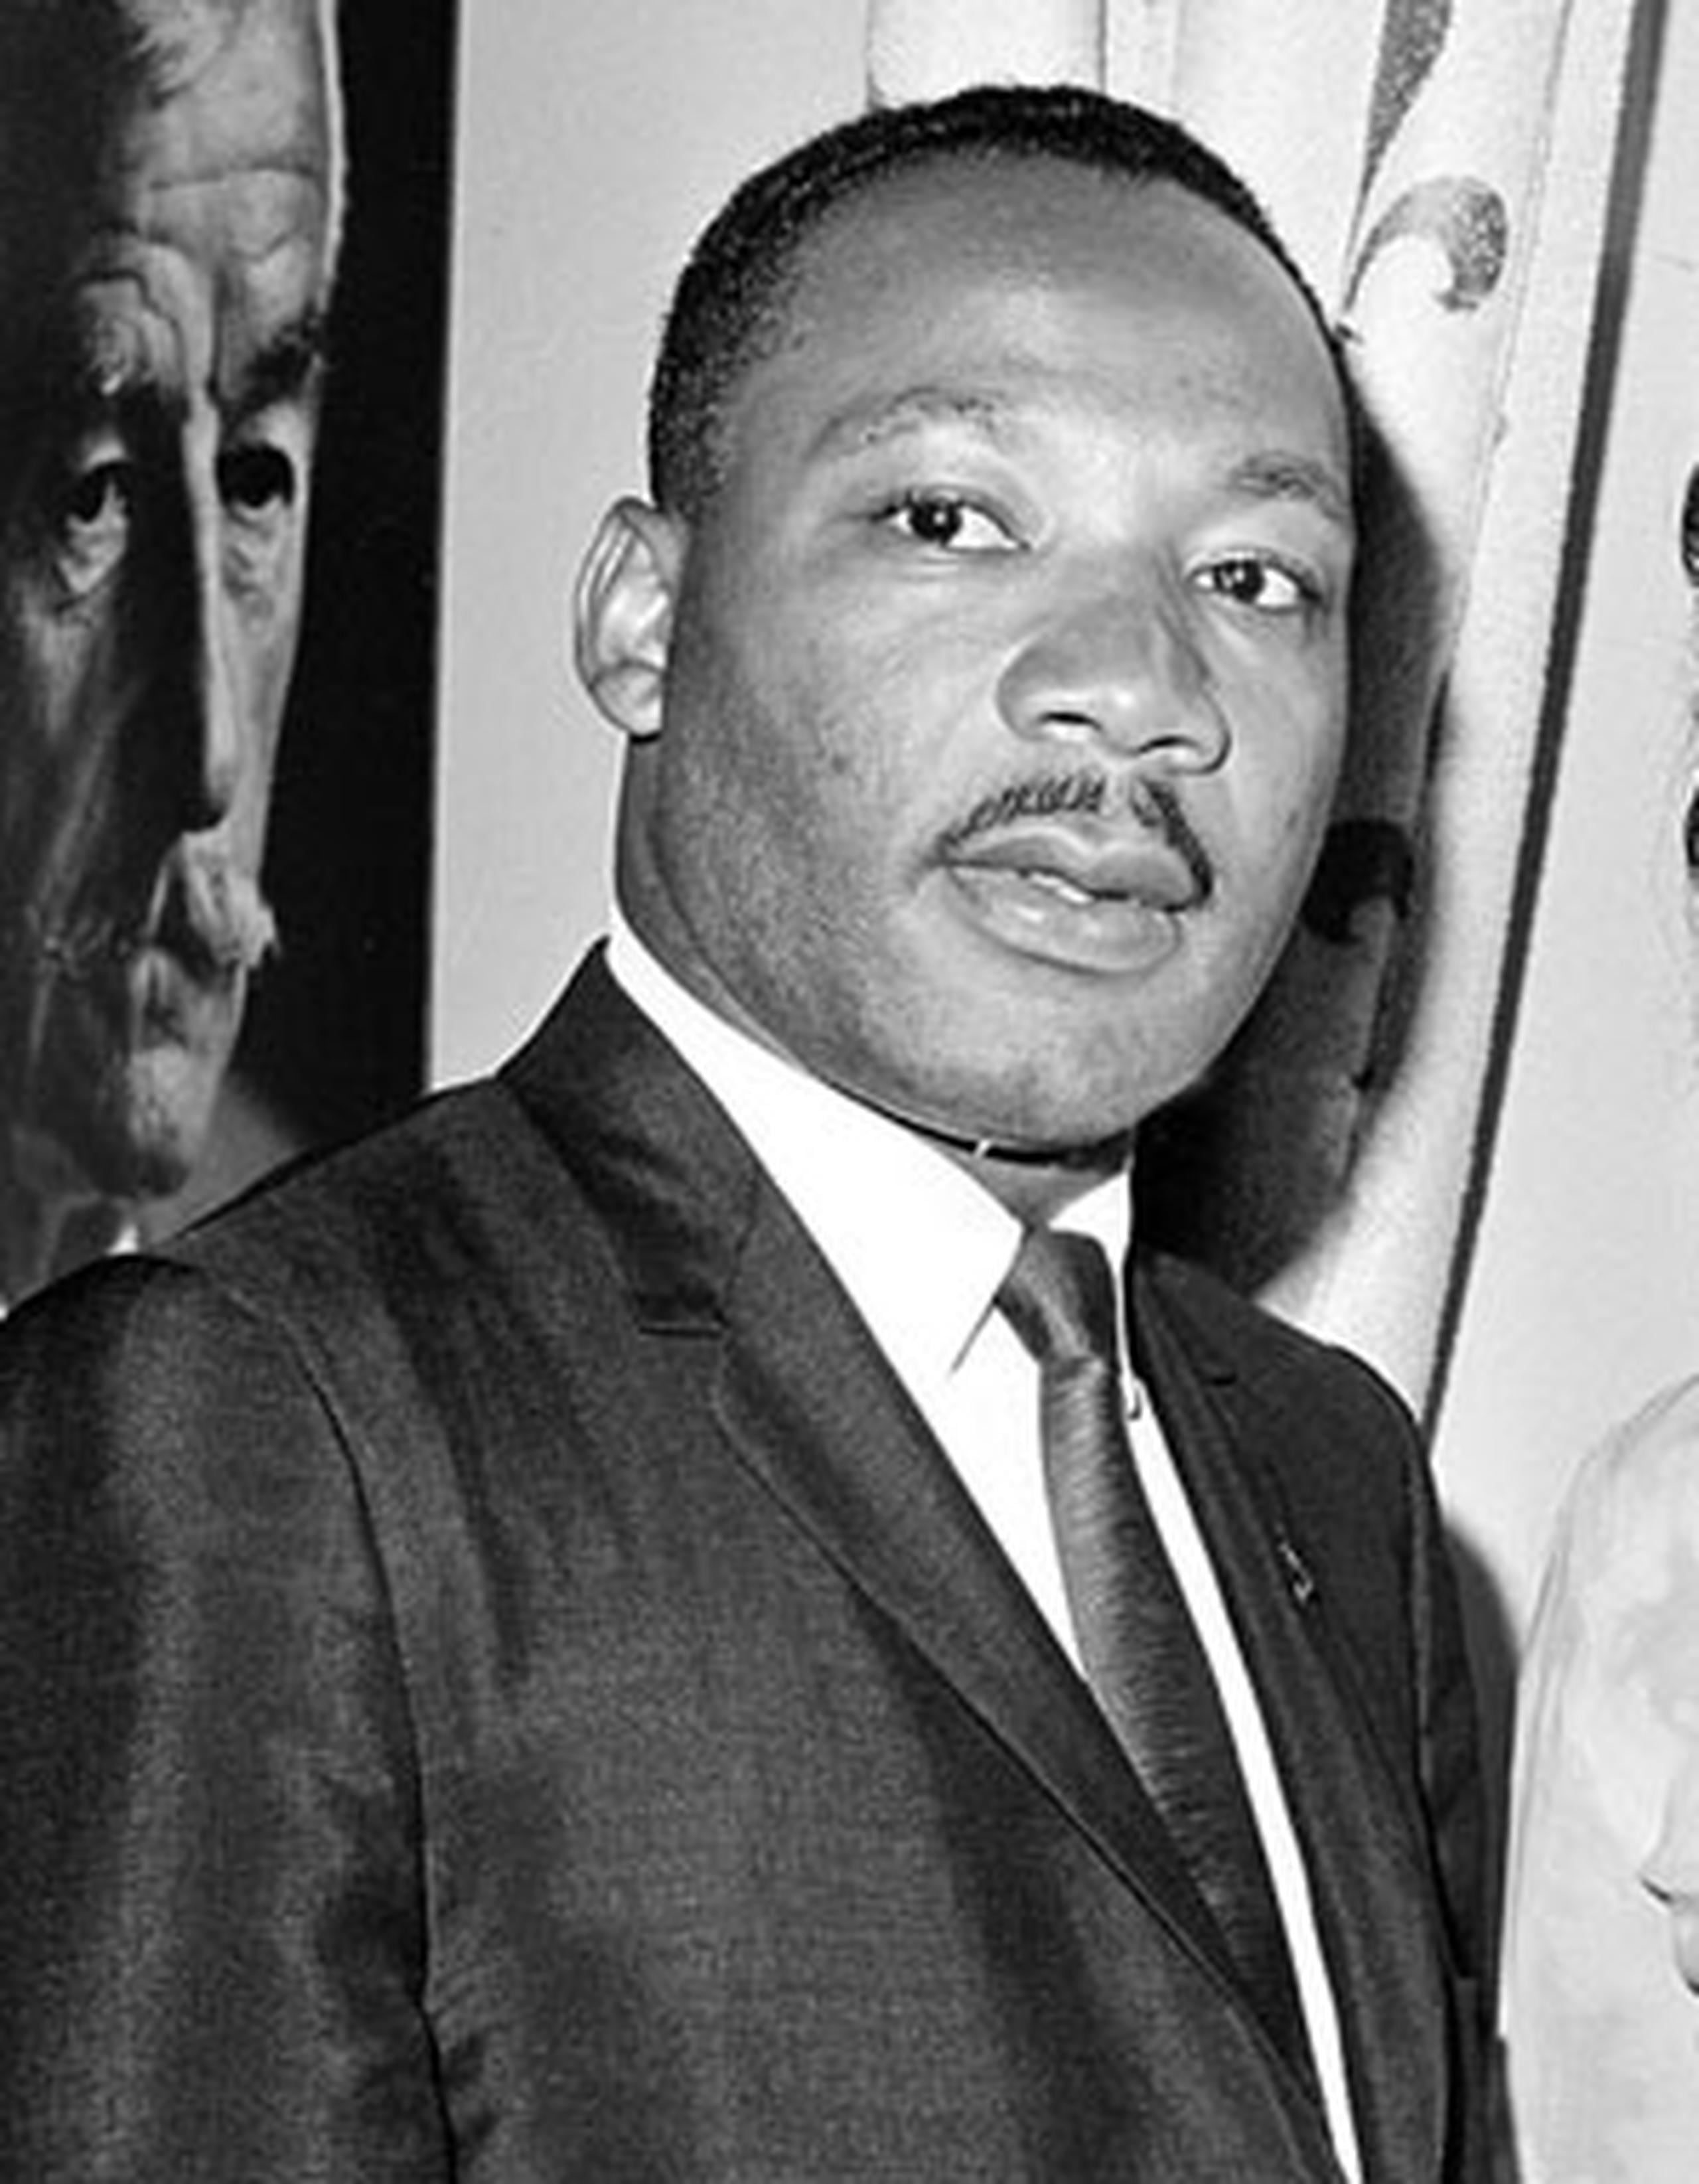 El premio Martin Luther King, Junior y Arturo Alfonso Schomburg se estableció en honor al líder negro que protagonizó luchas por los derechos civiles de la raza negra. (Archivo)